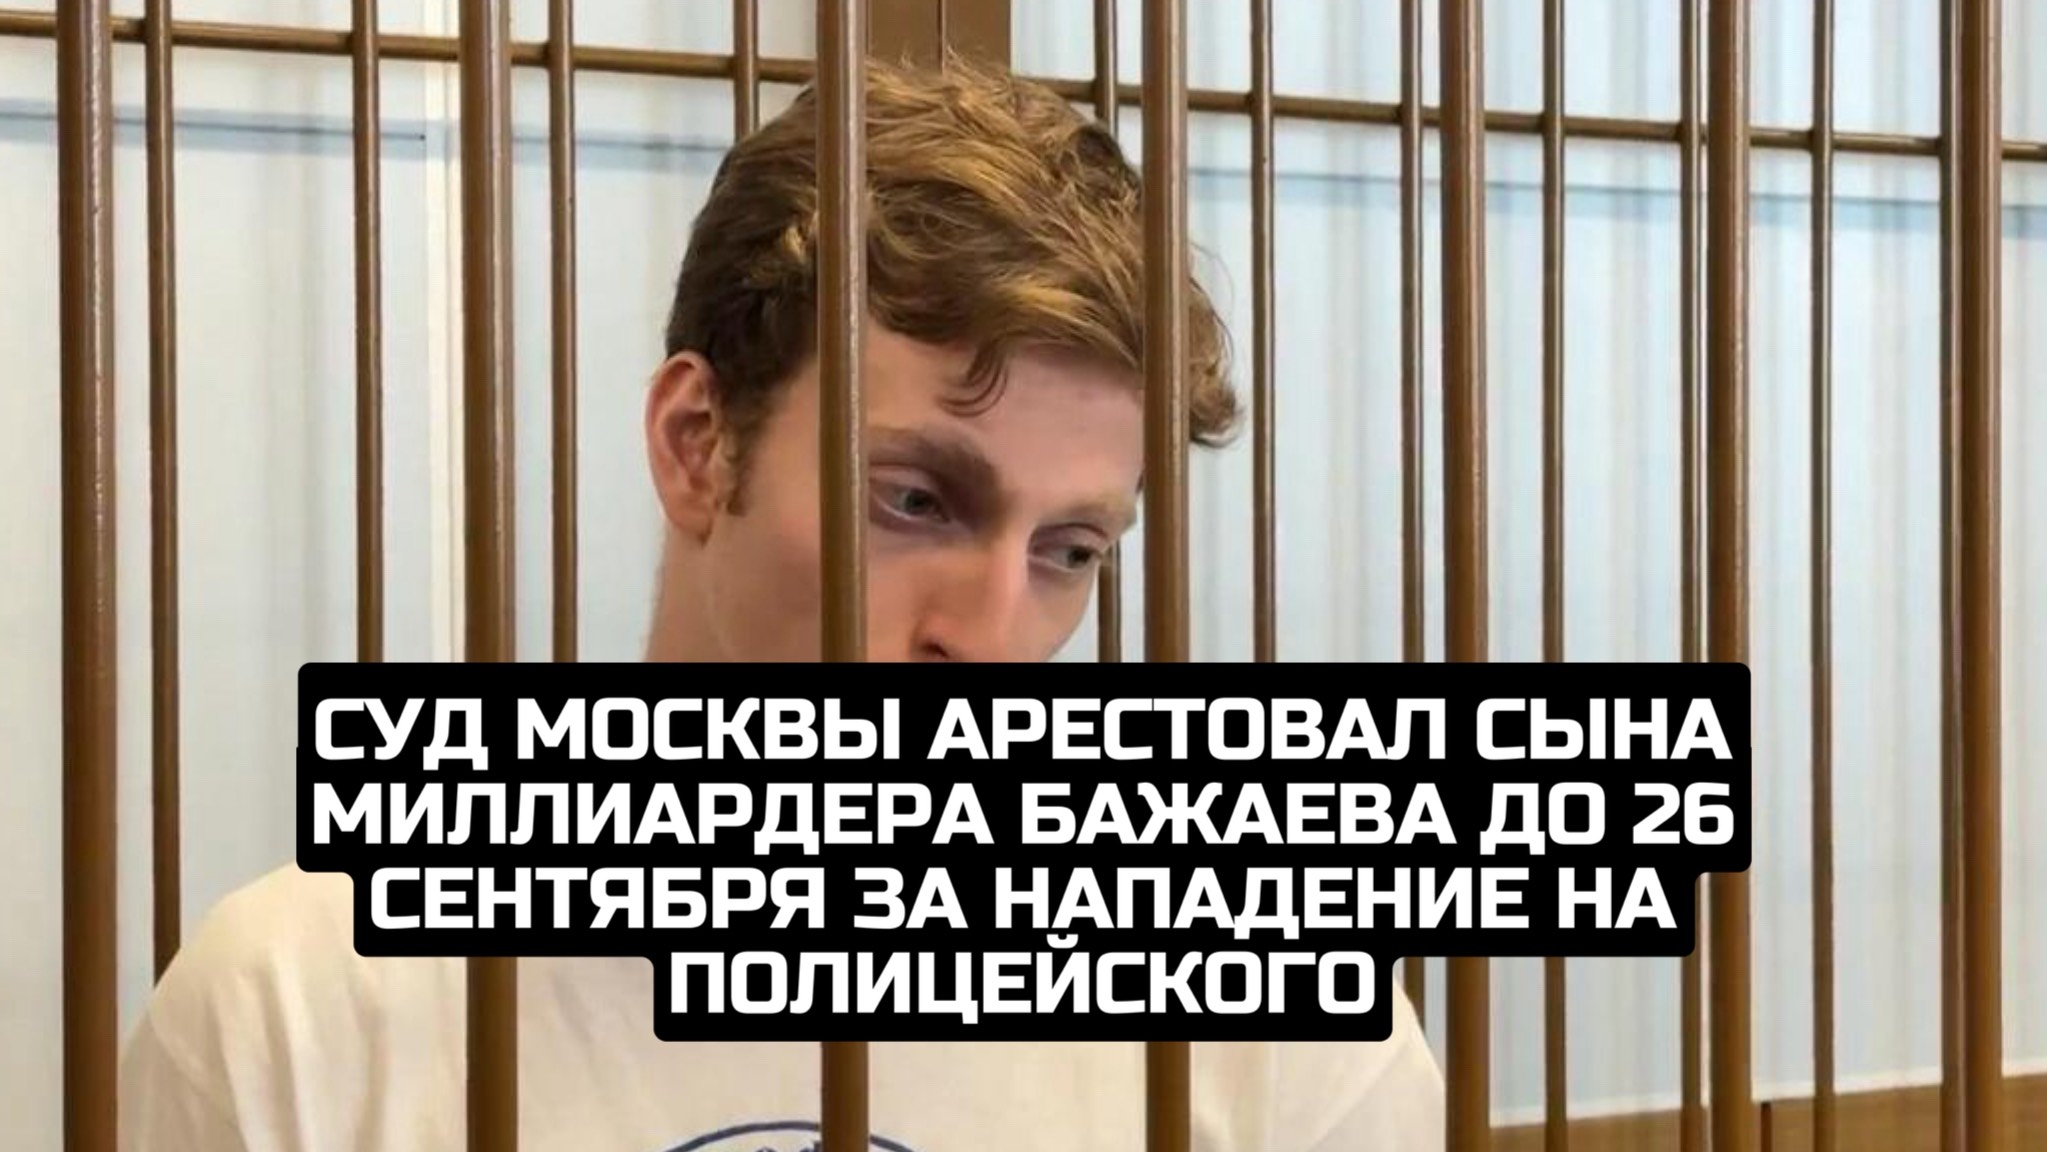 Суд Москвы арестовал сына миллиардера Бажаева до 26 сентября за нападение на полицейского